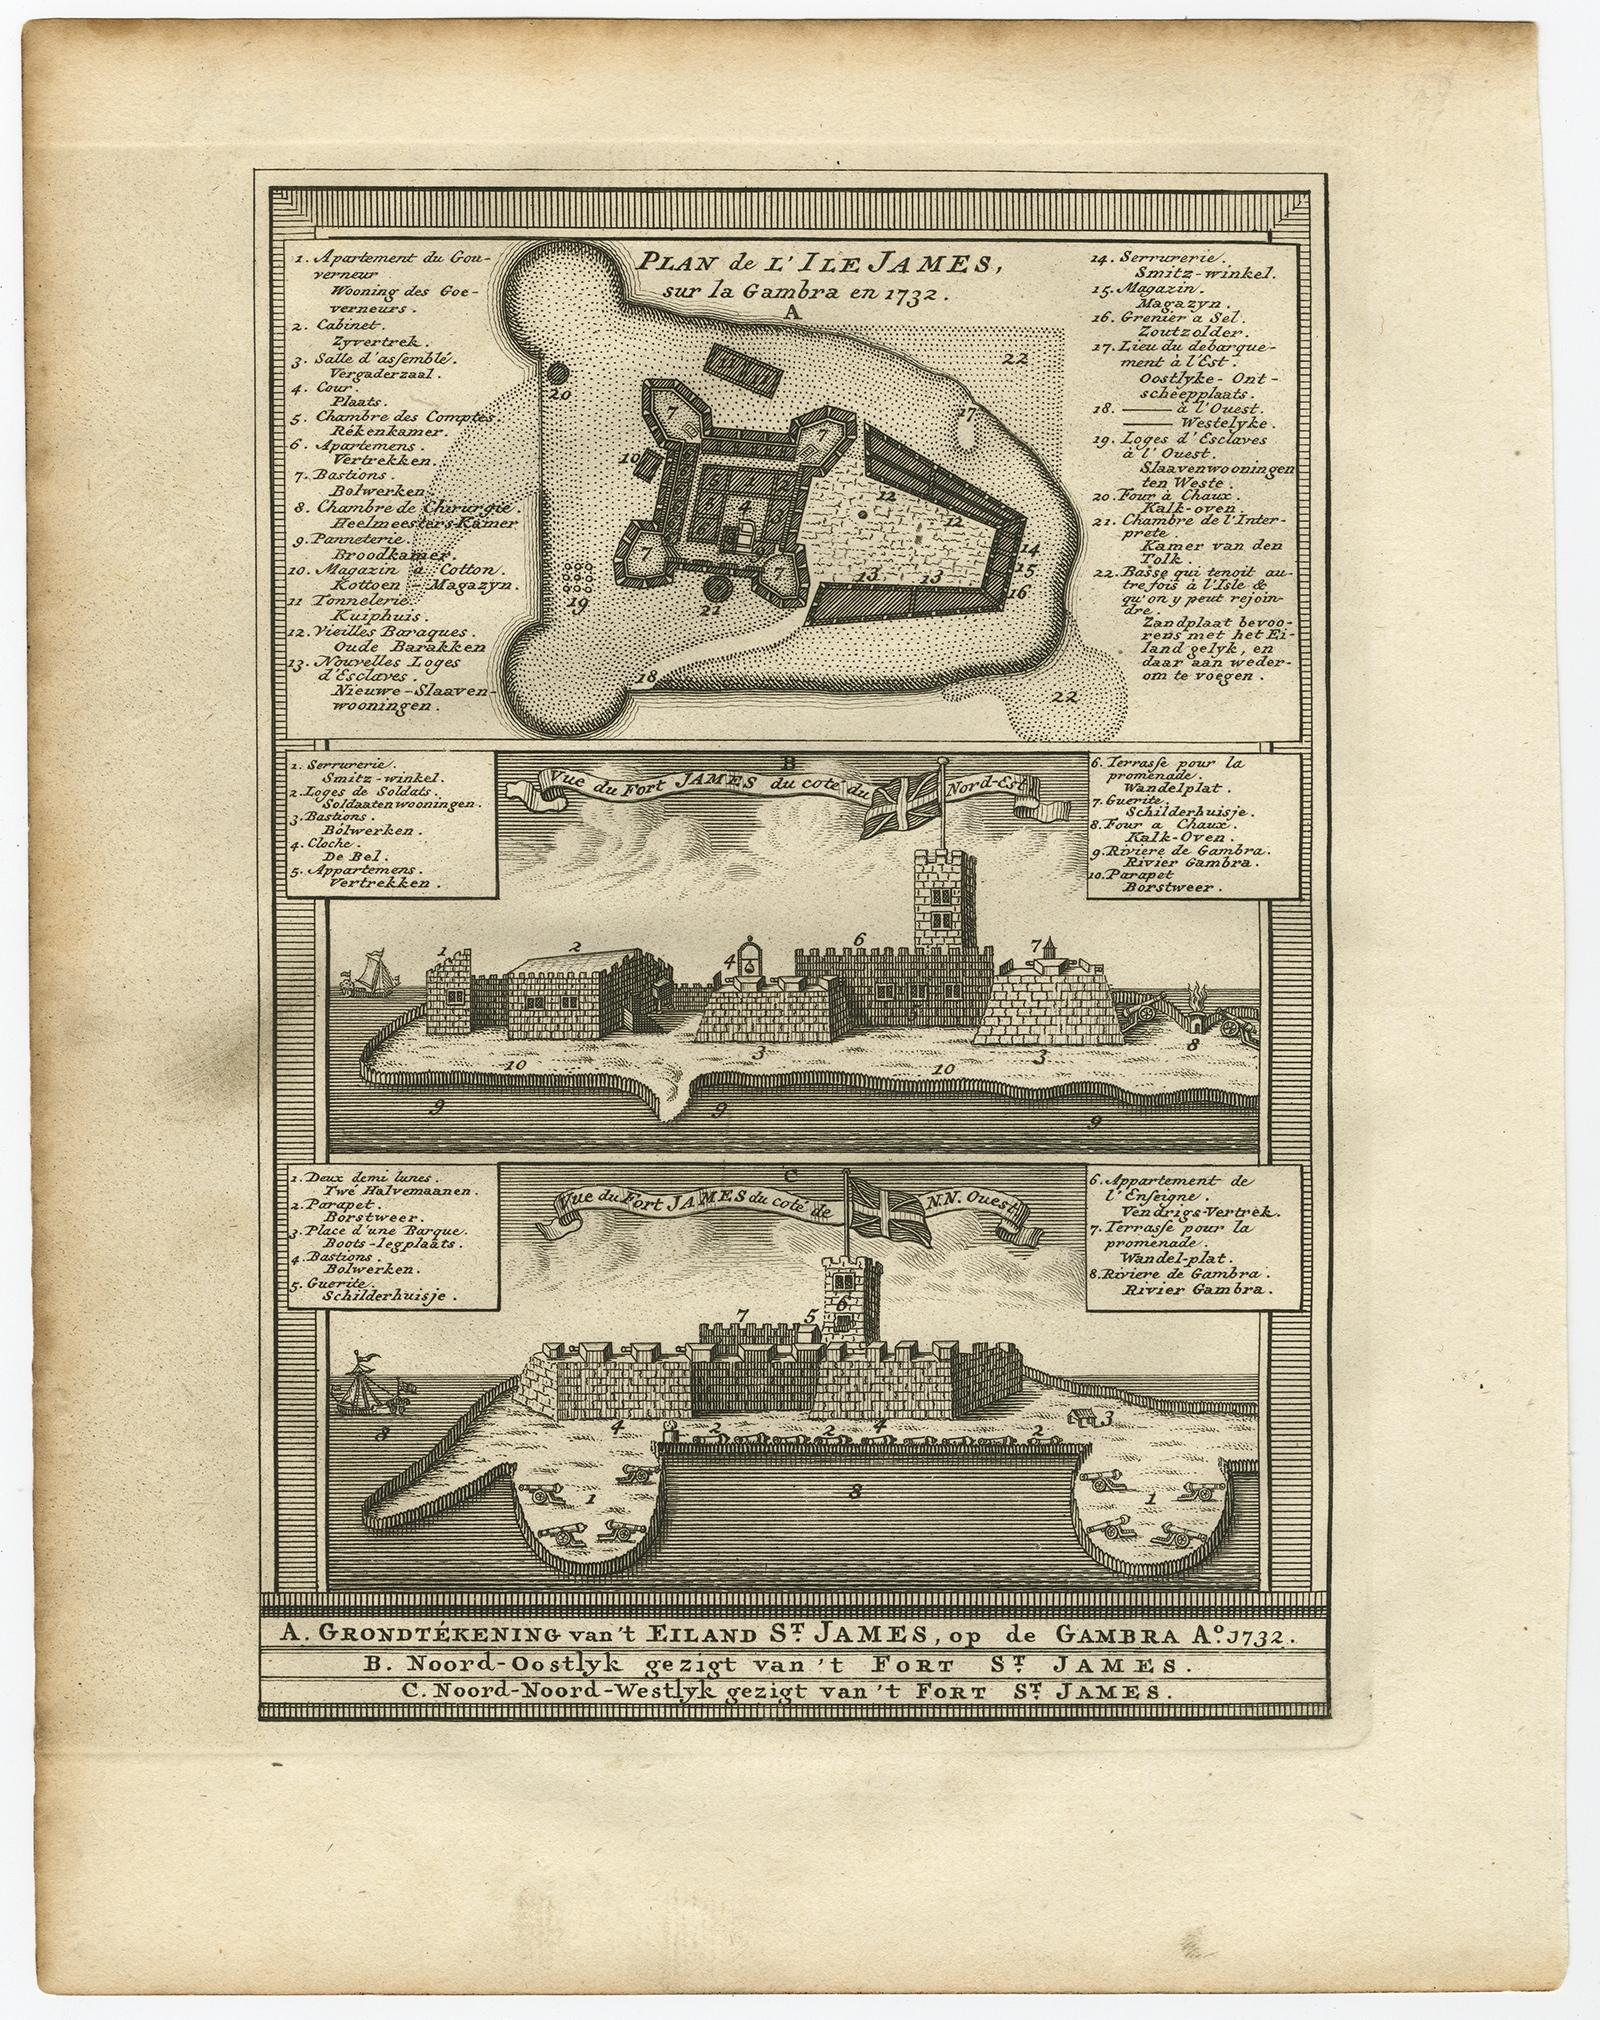 Plan de l'Isle James sur la Gambra en 1732 (...).

Kupferstich/Radierung auf Handbütten (Verge) Papier.
Blattgröße: 19,7 x 26,7 cm. Bildgröße: 13,8 x 19,8 cm.

Aus Band 3 einer niederländischen Ausgabe von Prevosts monumentalem Werk: